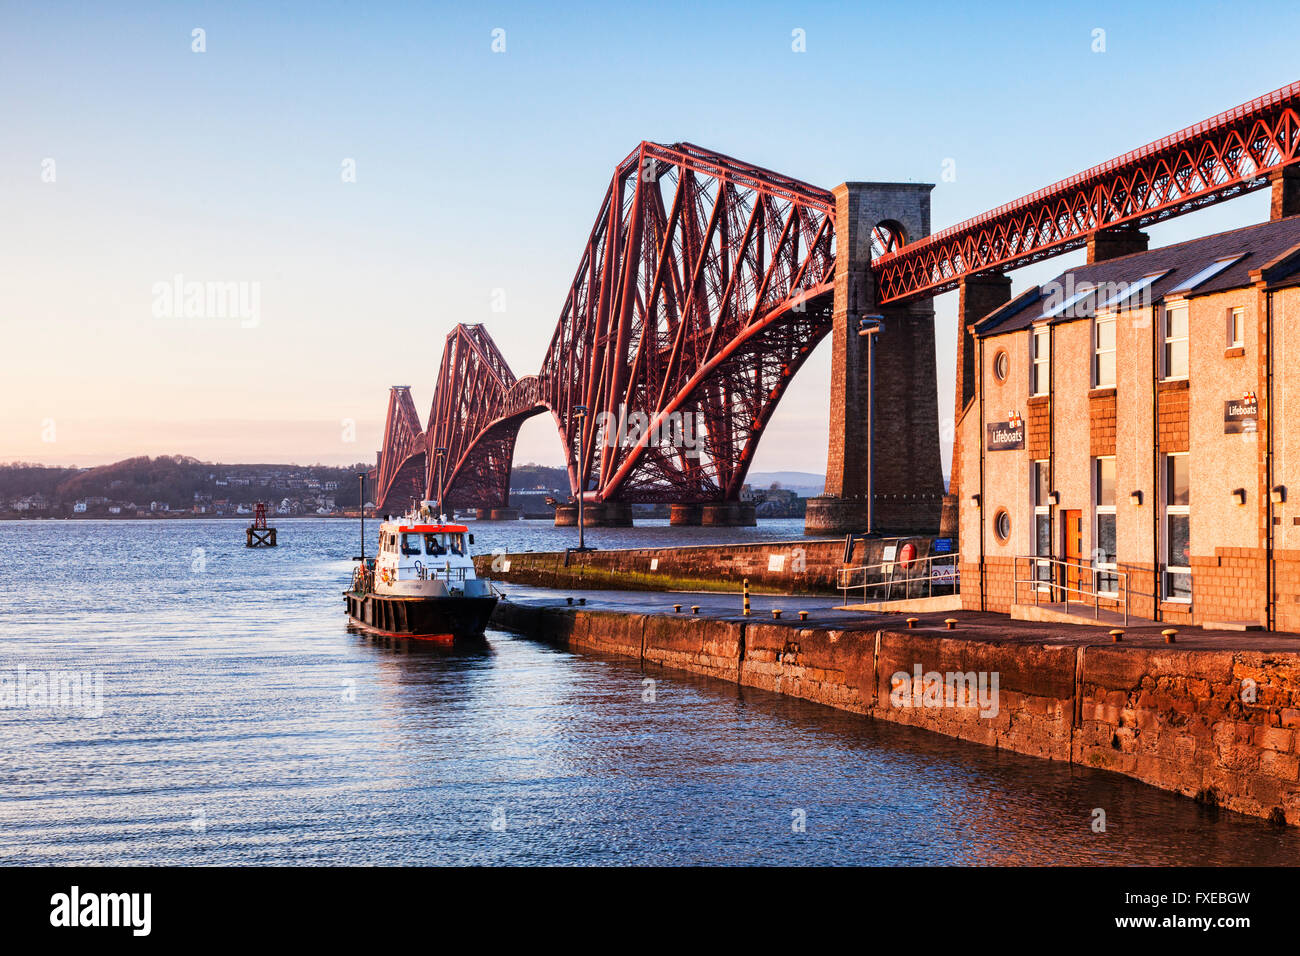 Her-Eisenbahnbrücke, Queensferry, Edinburgh, East Lothian, Schottland, UK, einer der berühmtesten Brücken der Welt und ein Symbol o Stockfoto